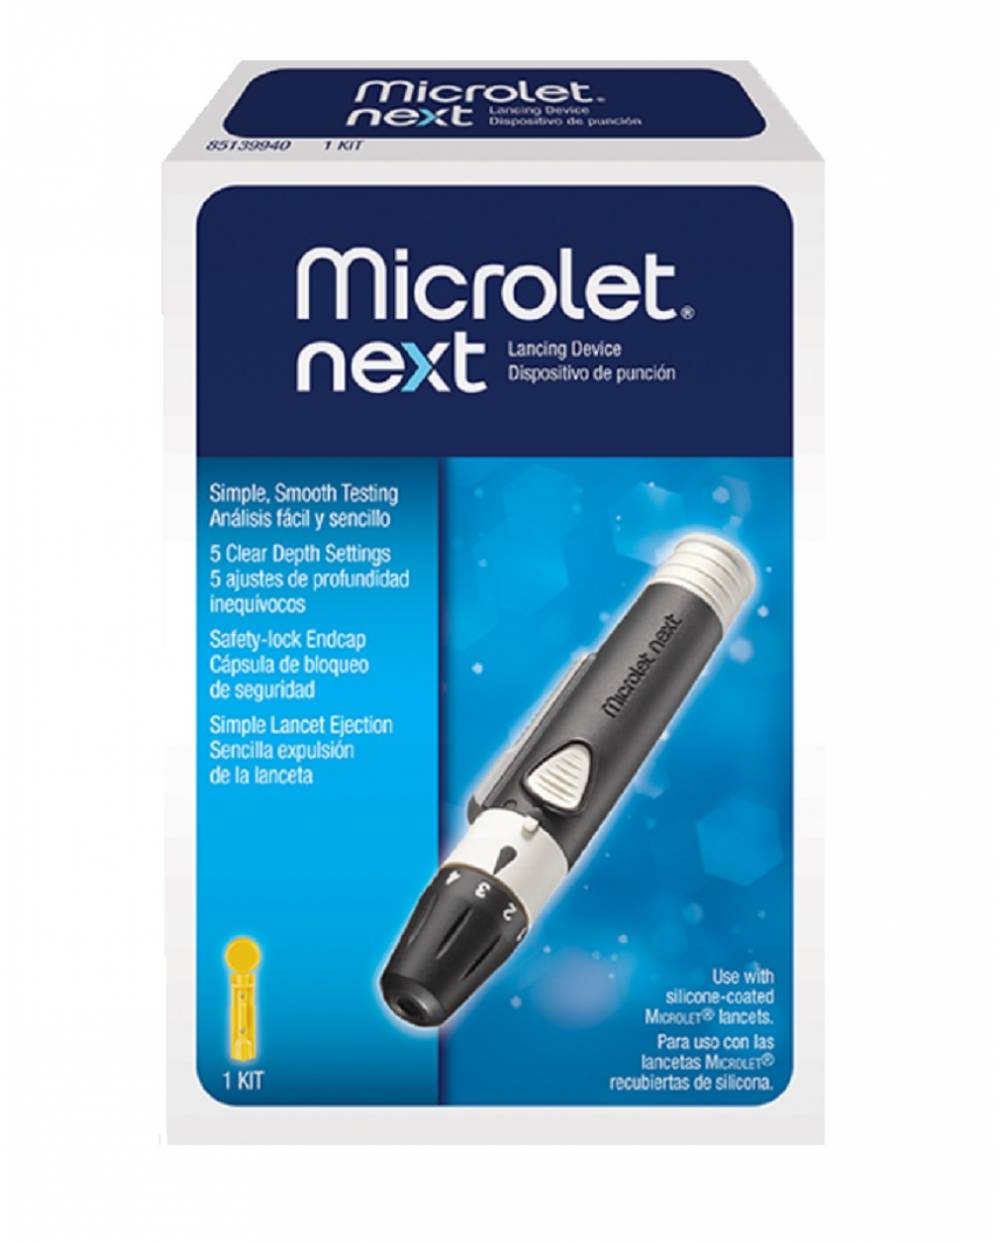 Microlet Next - dispositivo de punción